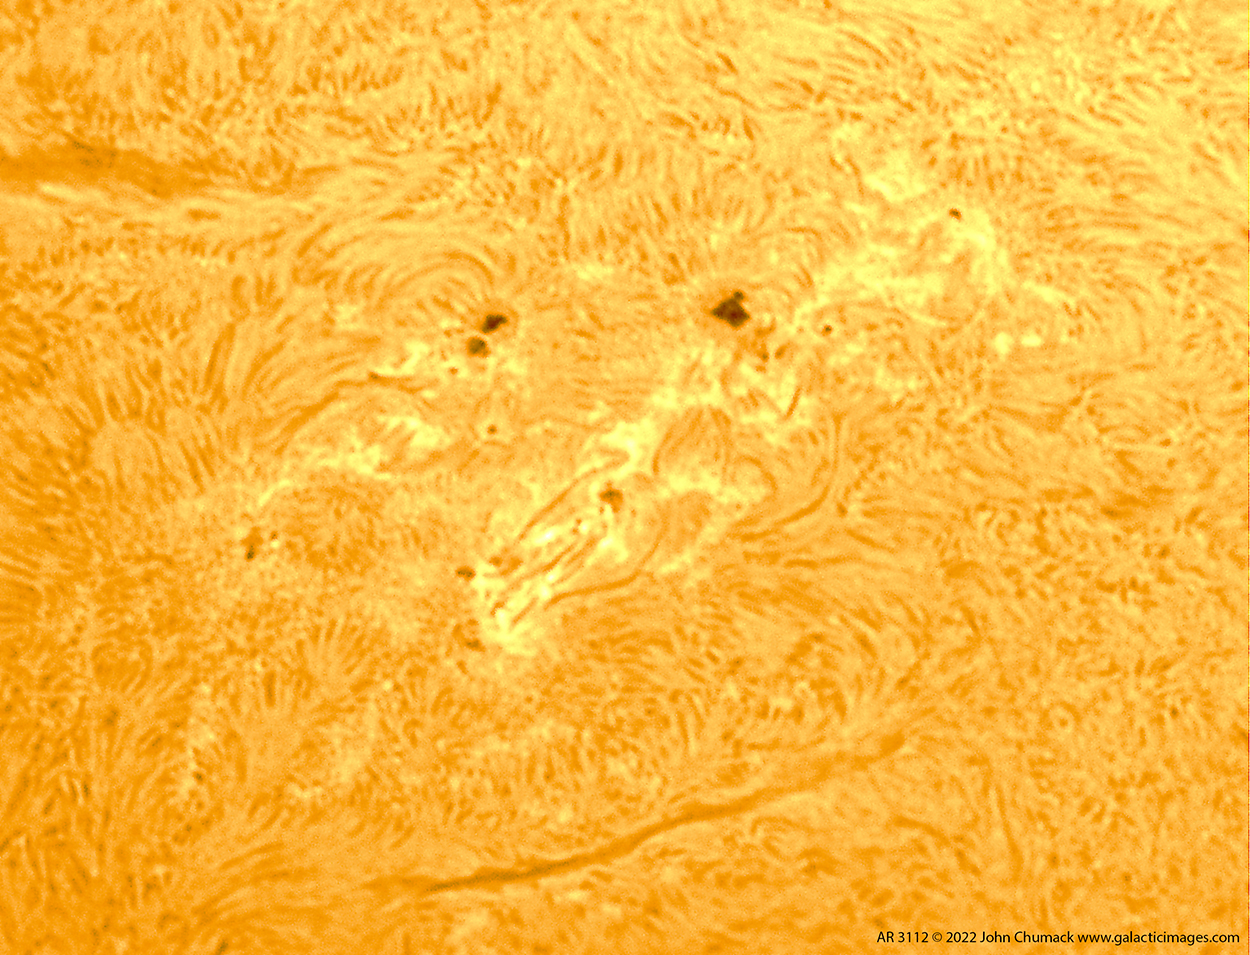 Sunspot group AR3112